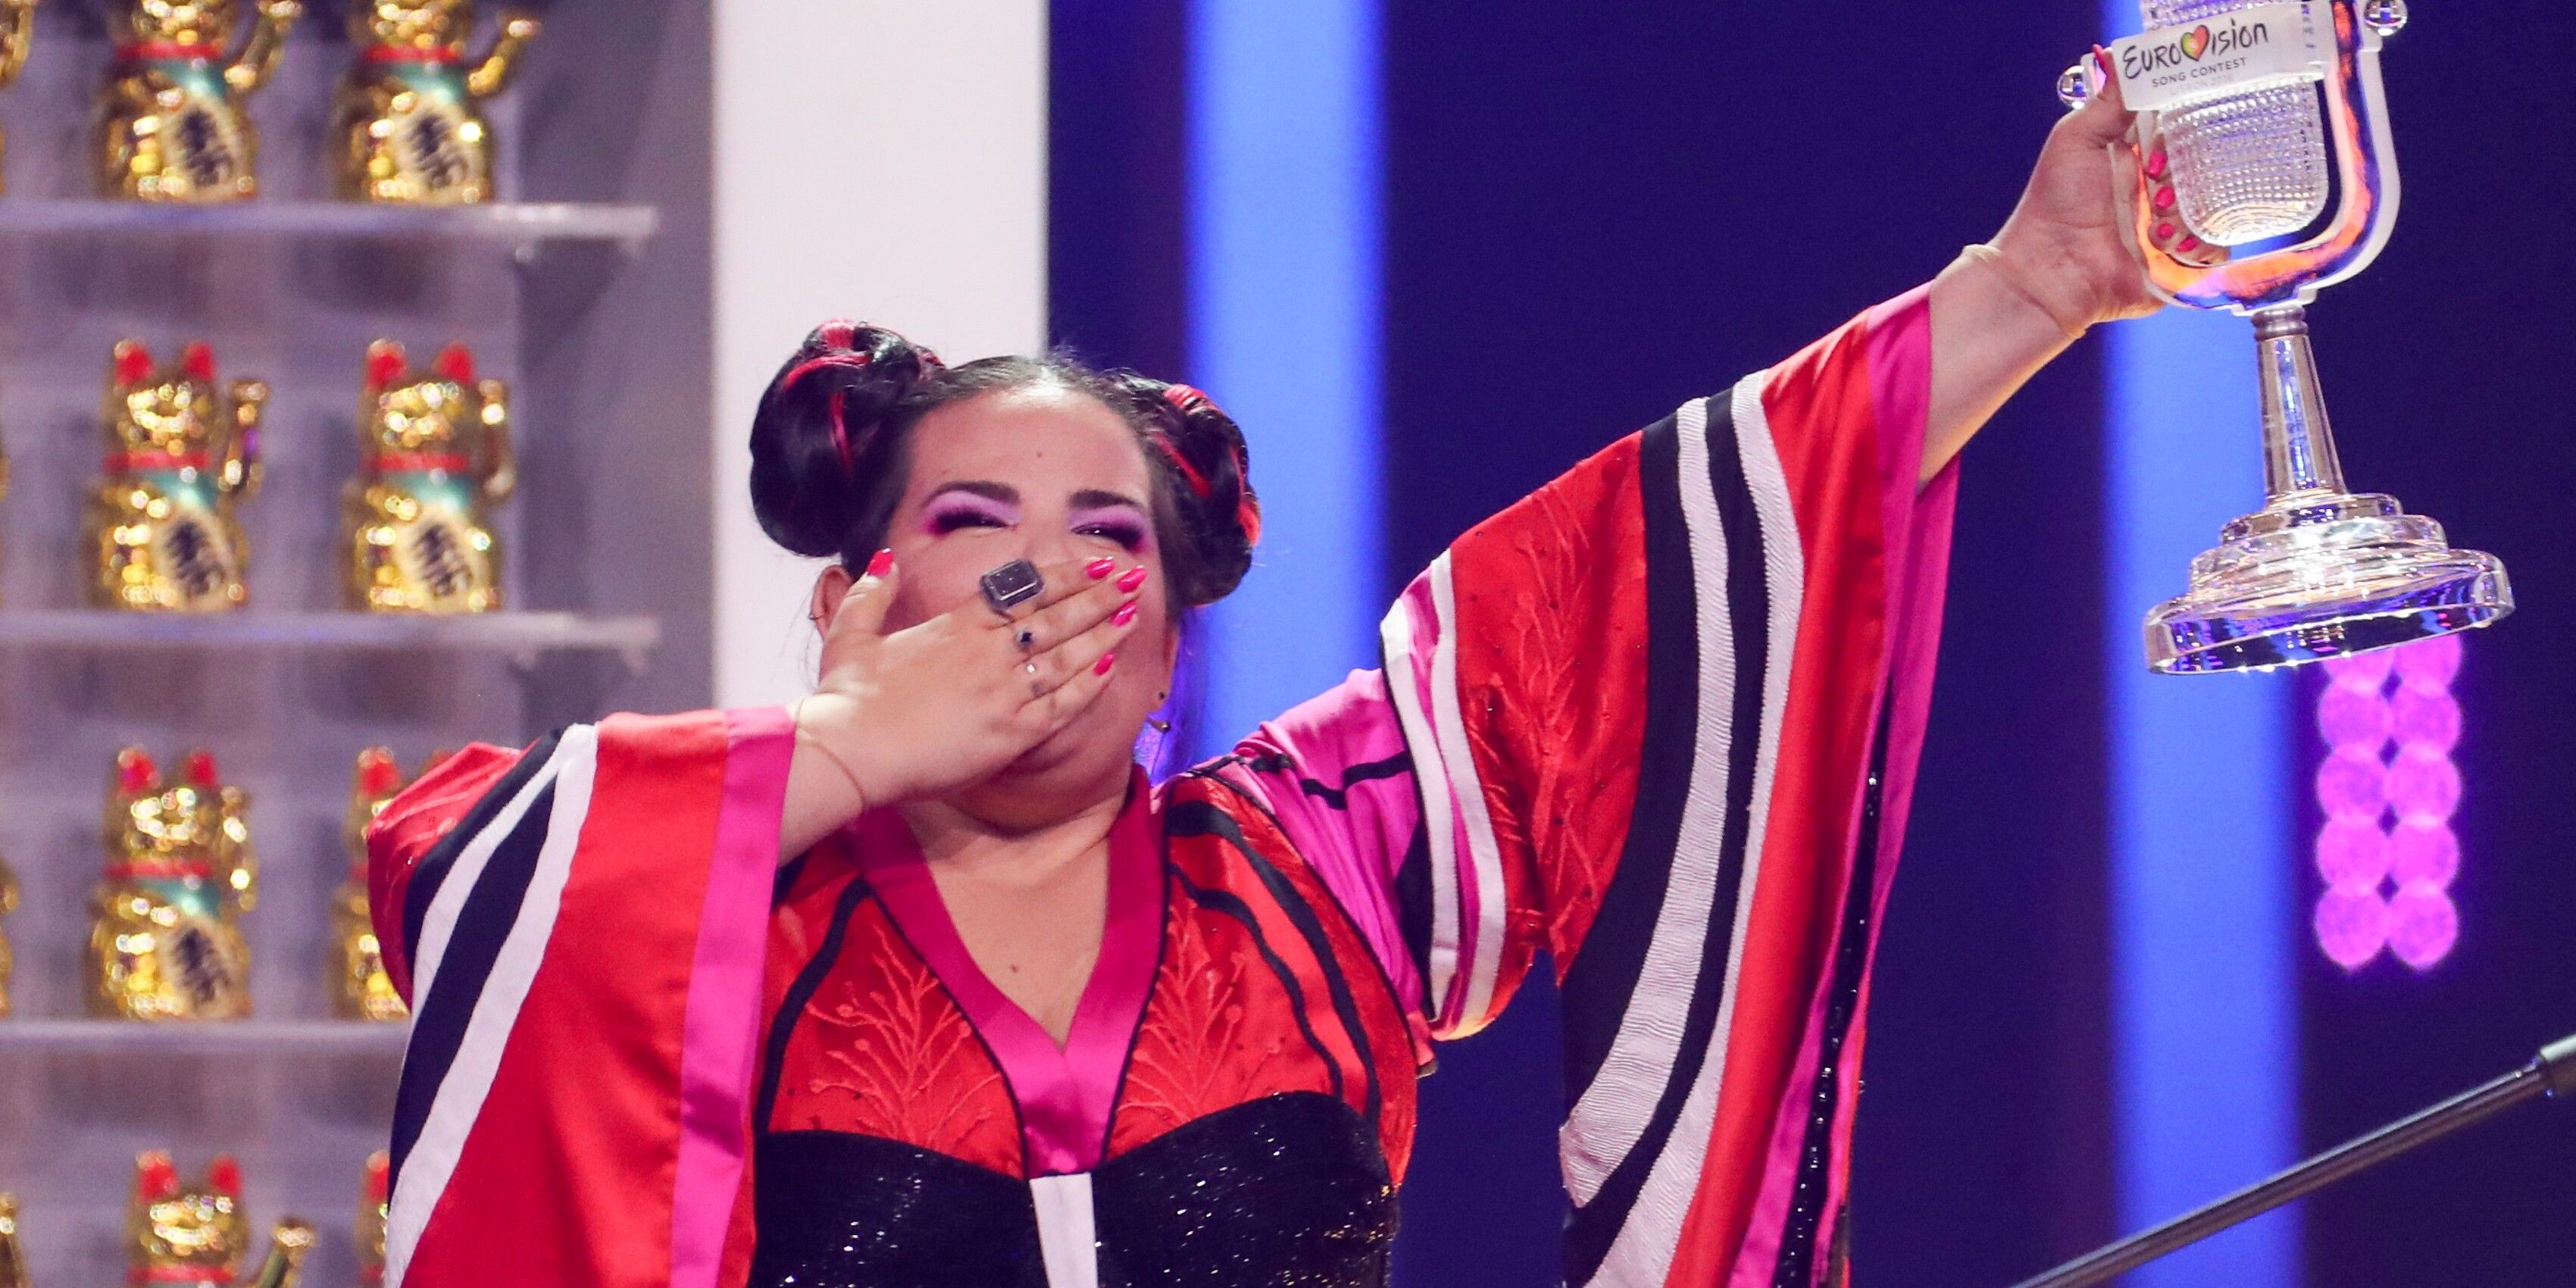 Netta blows a kiss at Eurovision